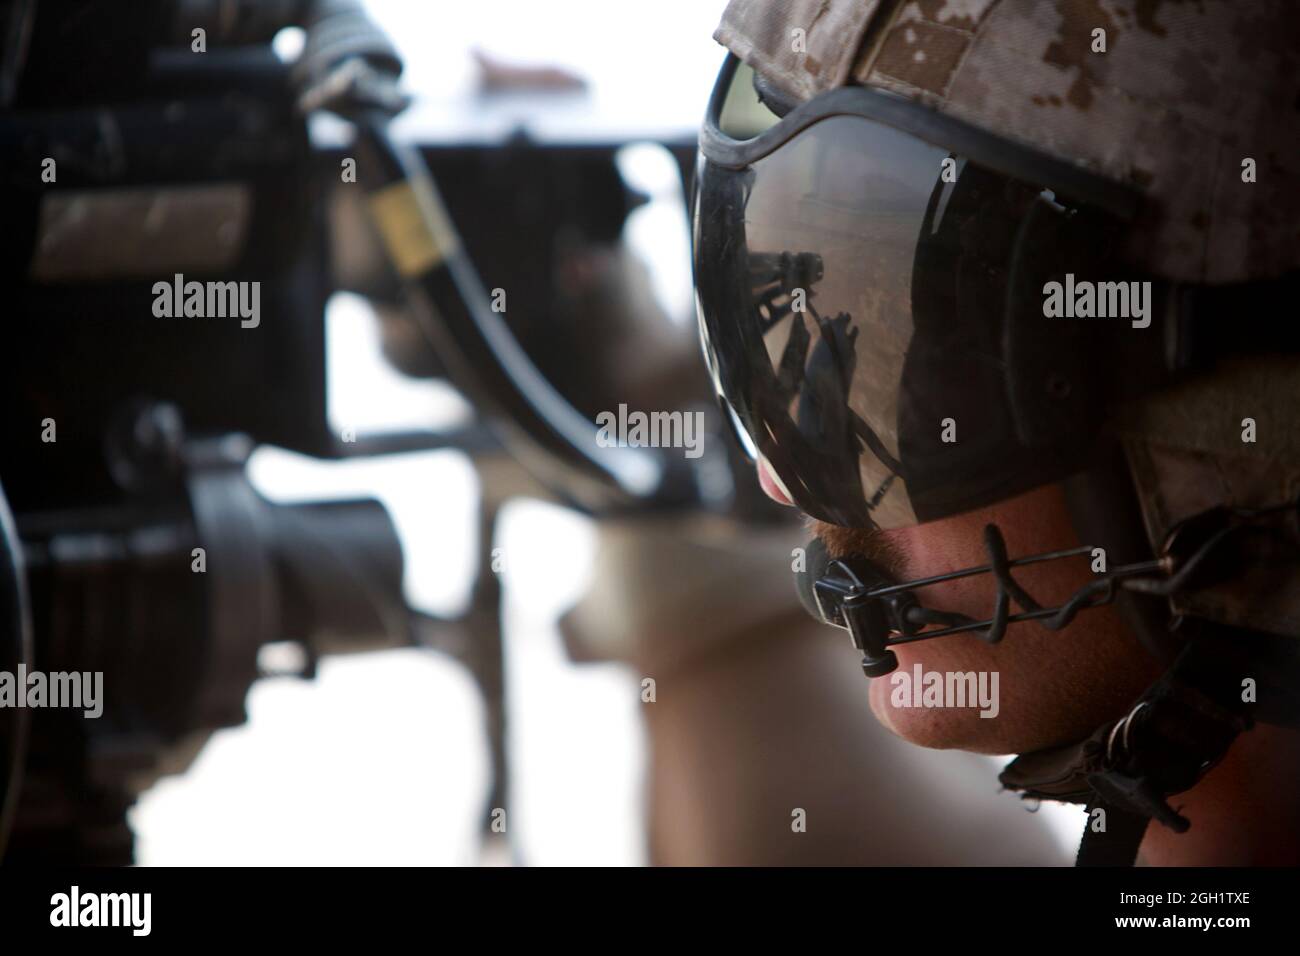 Caporal de lance du corps des Marines des États-Unis Le 20 juin 2012, Seamos Clarke, de l'Escadron d'hélicoptères d'attaque de lumière marine (HMLA) 469, scanne la zone alors qu'il était doté d'une mitrailleuse de calibre 0,50 sur un hélicoptère UH-1Y Venom Huey et assure la reconnaissance aérienne des Marines du 3e Bataillon de reconnaissance d'armes légères (3e LAR) dans la province de Helmand, en Afghanistan. Le HMLA-469 a assuré la reconnaissance aérienne et la sécurité des Marines de la 3e LAR pendant l'opération Halberd V afin d'empêcher la distribution de la contrebande à l'appui des opérations de lutte contre l'insurrection. Banque D'Images